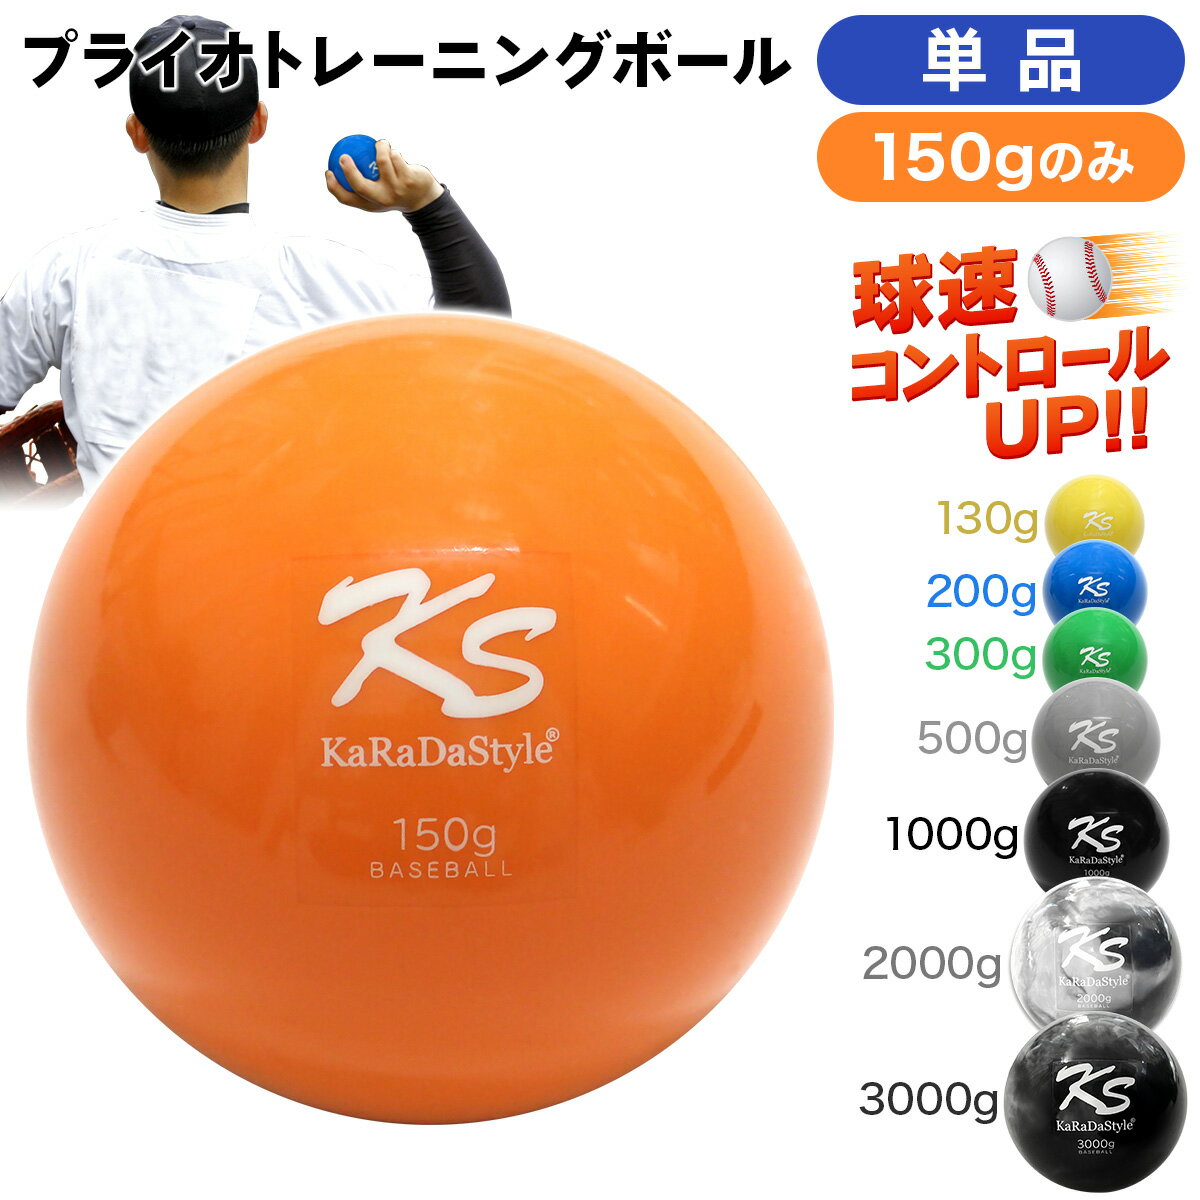 【エントリーでP10倍】 プライオボール 野球 球速アップ トレーニングボール 投手 プアボール サンドボール 練習 ウエイトボール 重いボール Plyoball 150g (単品)